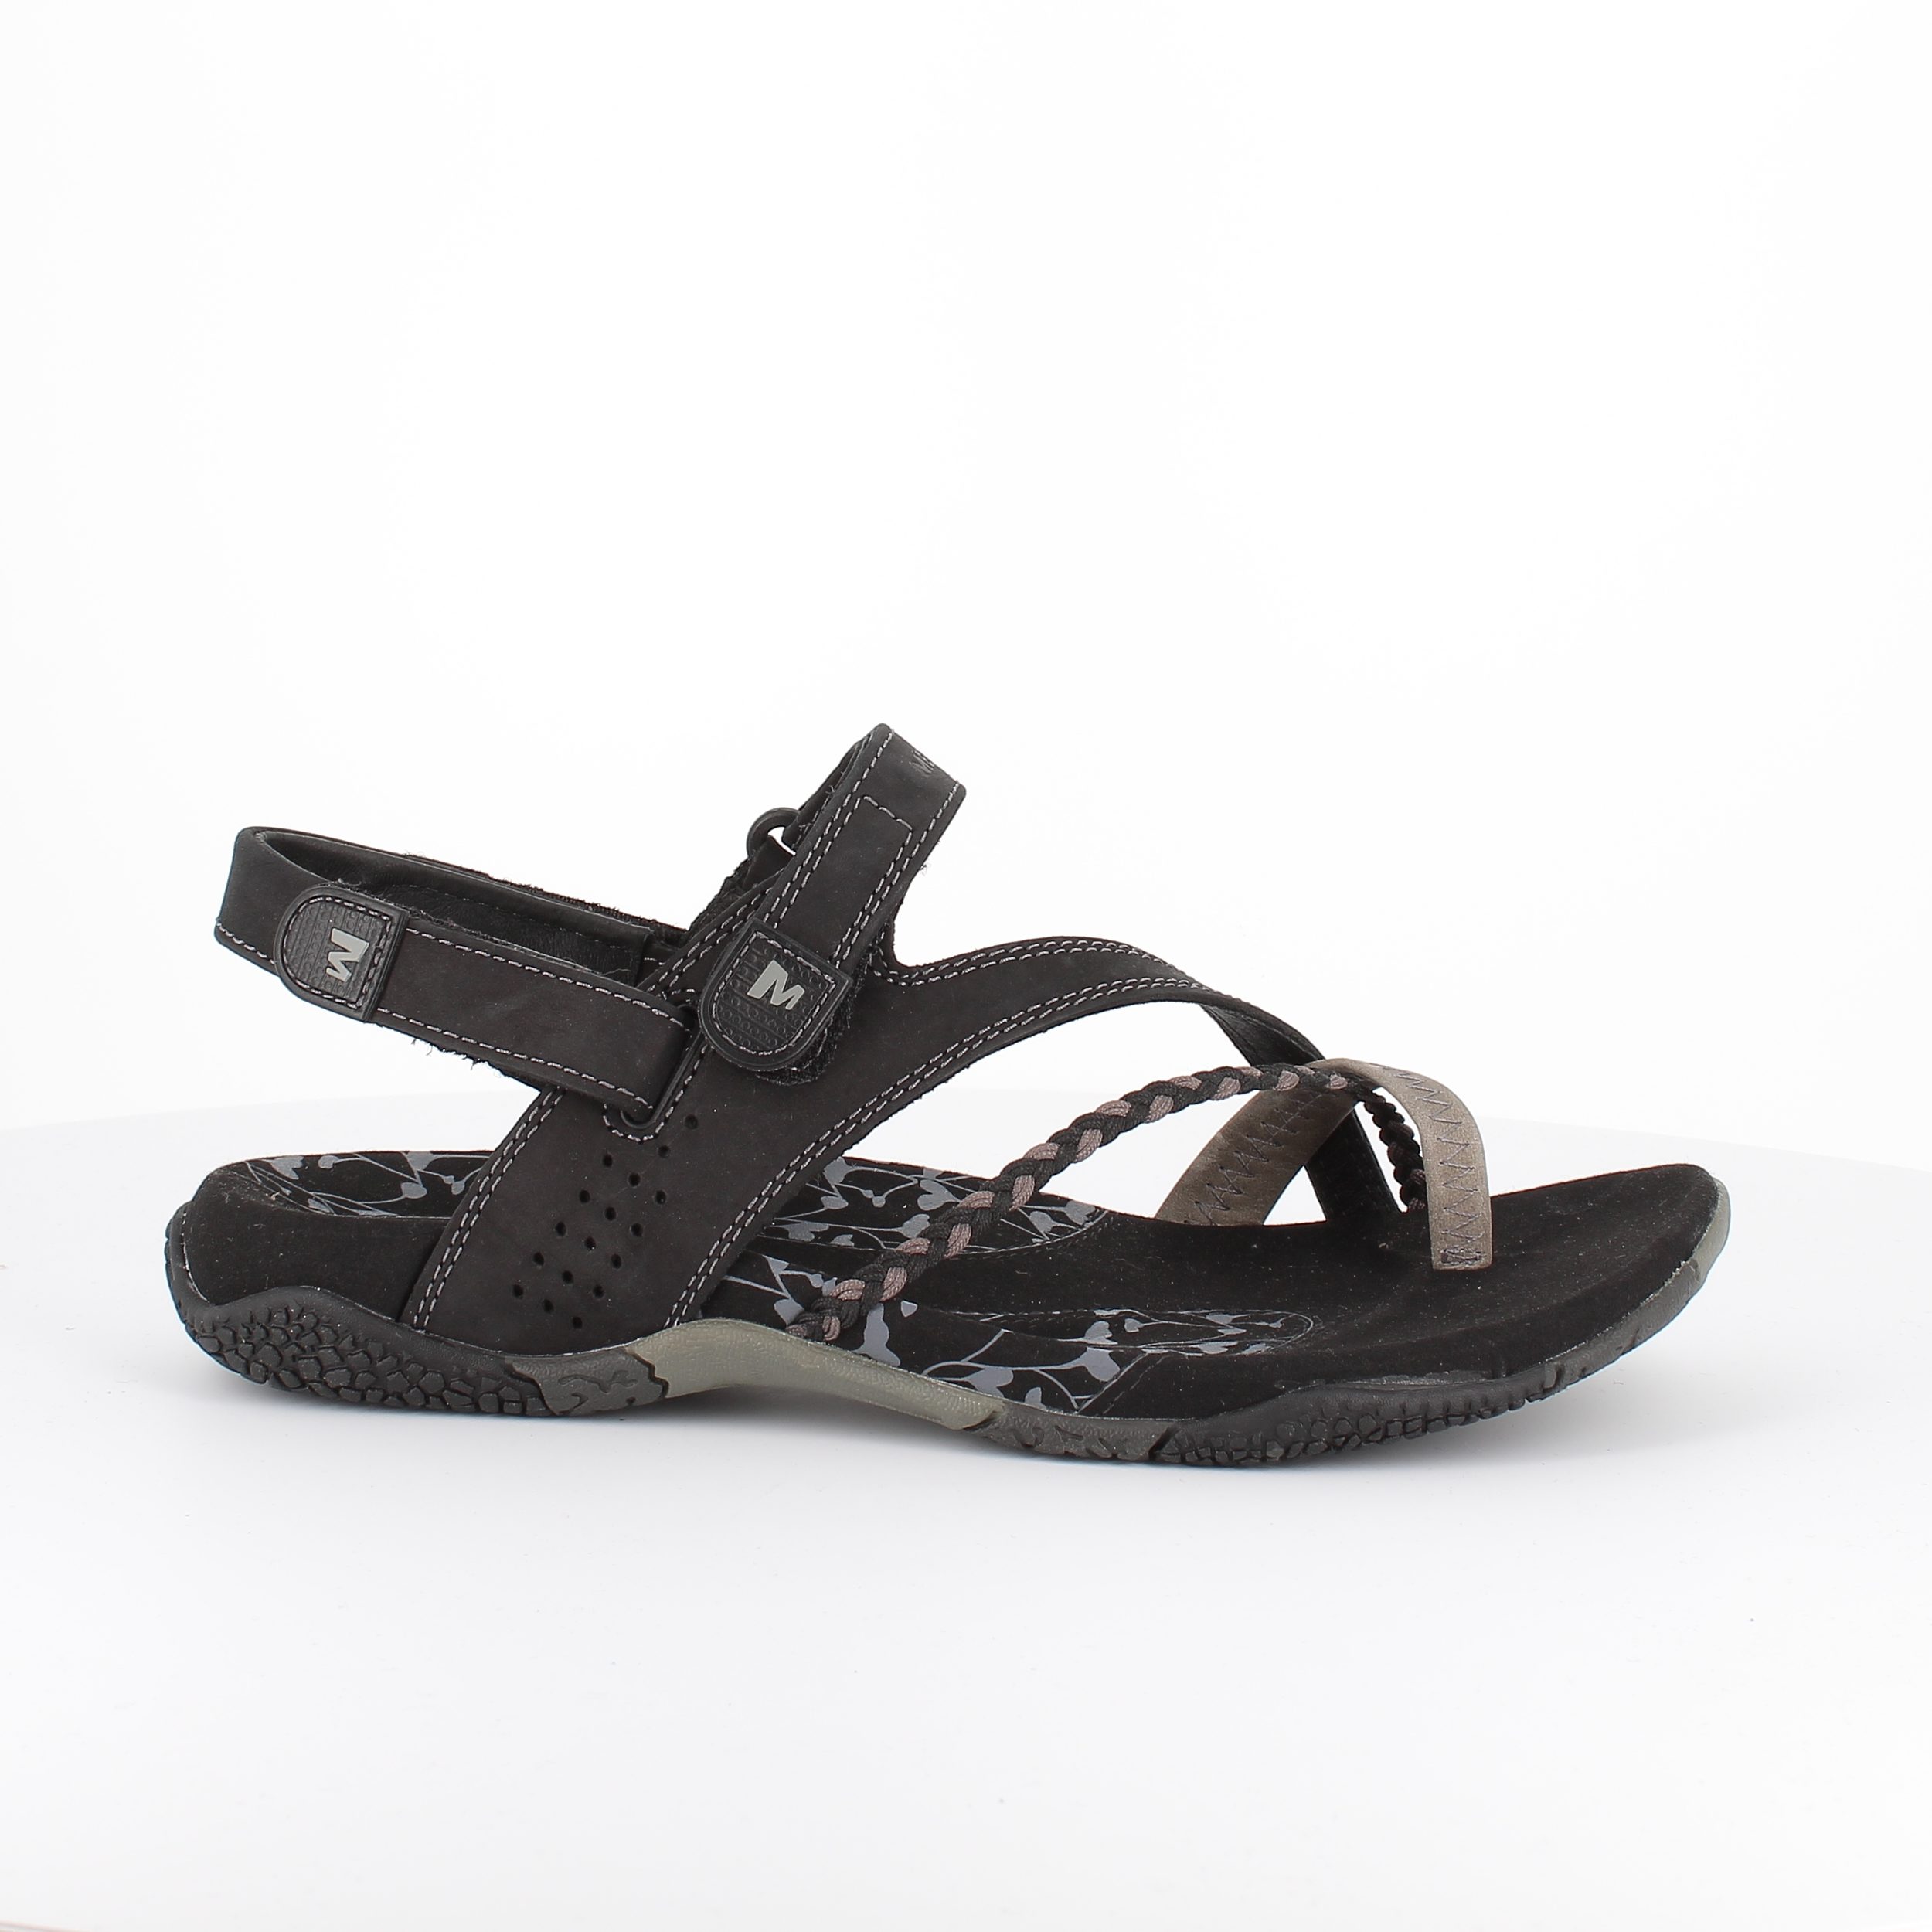 Se Merrell Siena sandalsko, sort-42 - Sandaler hos Sygeplejebutikken.dk